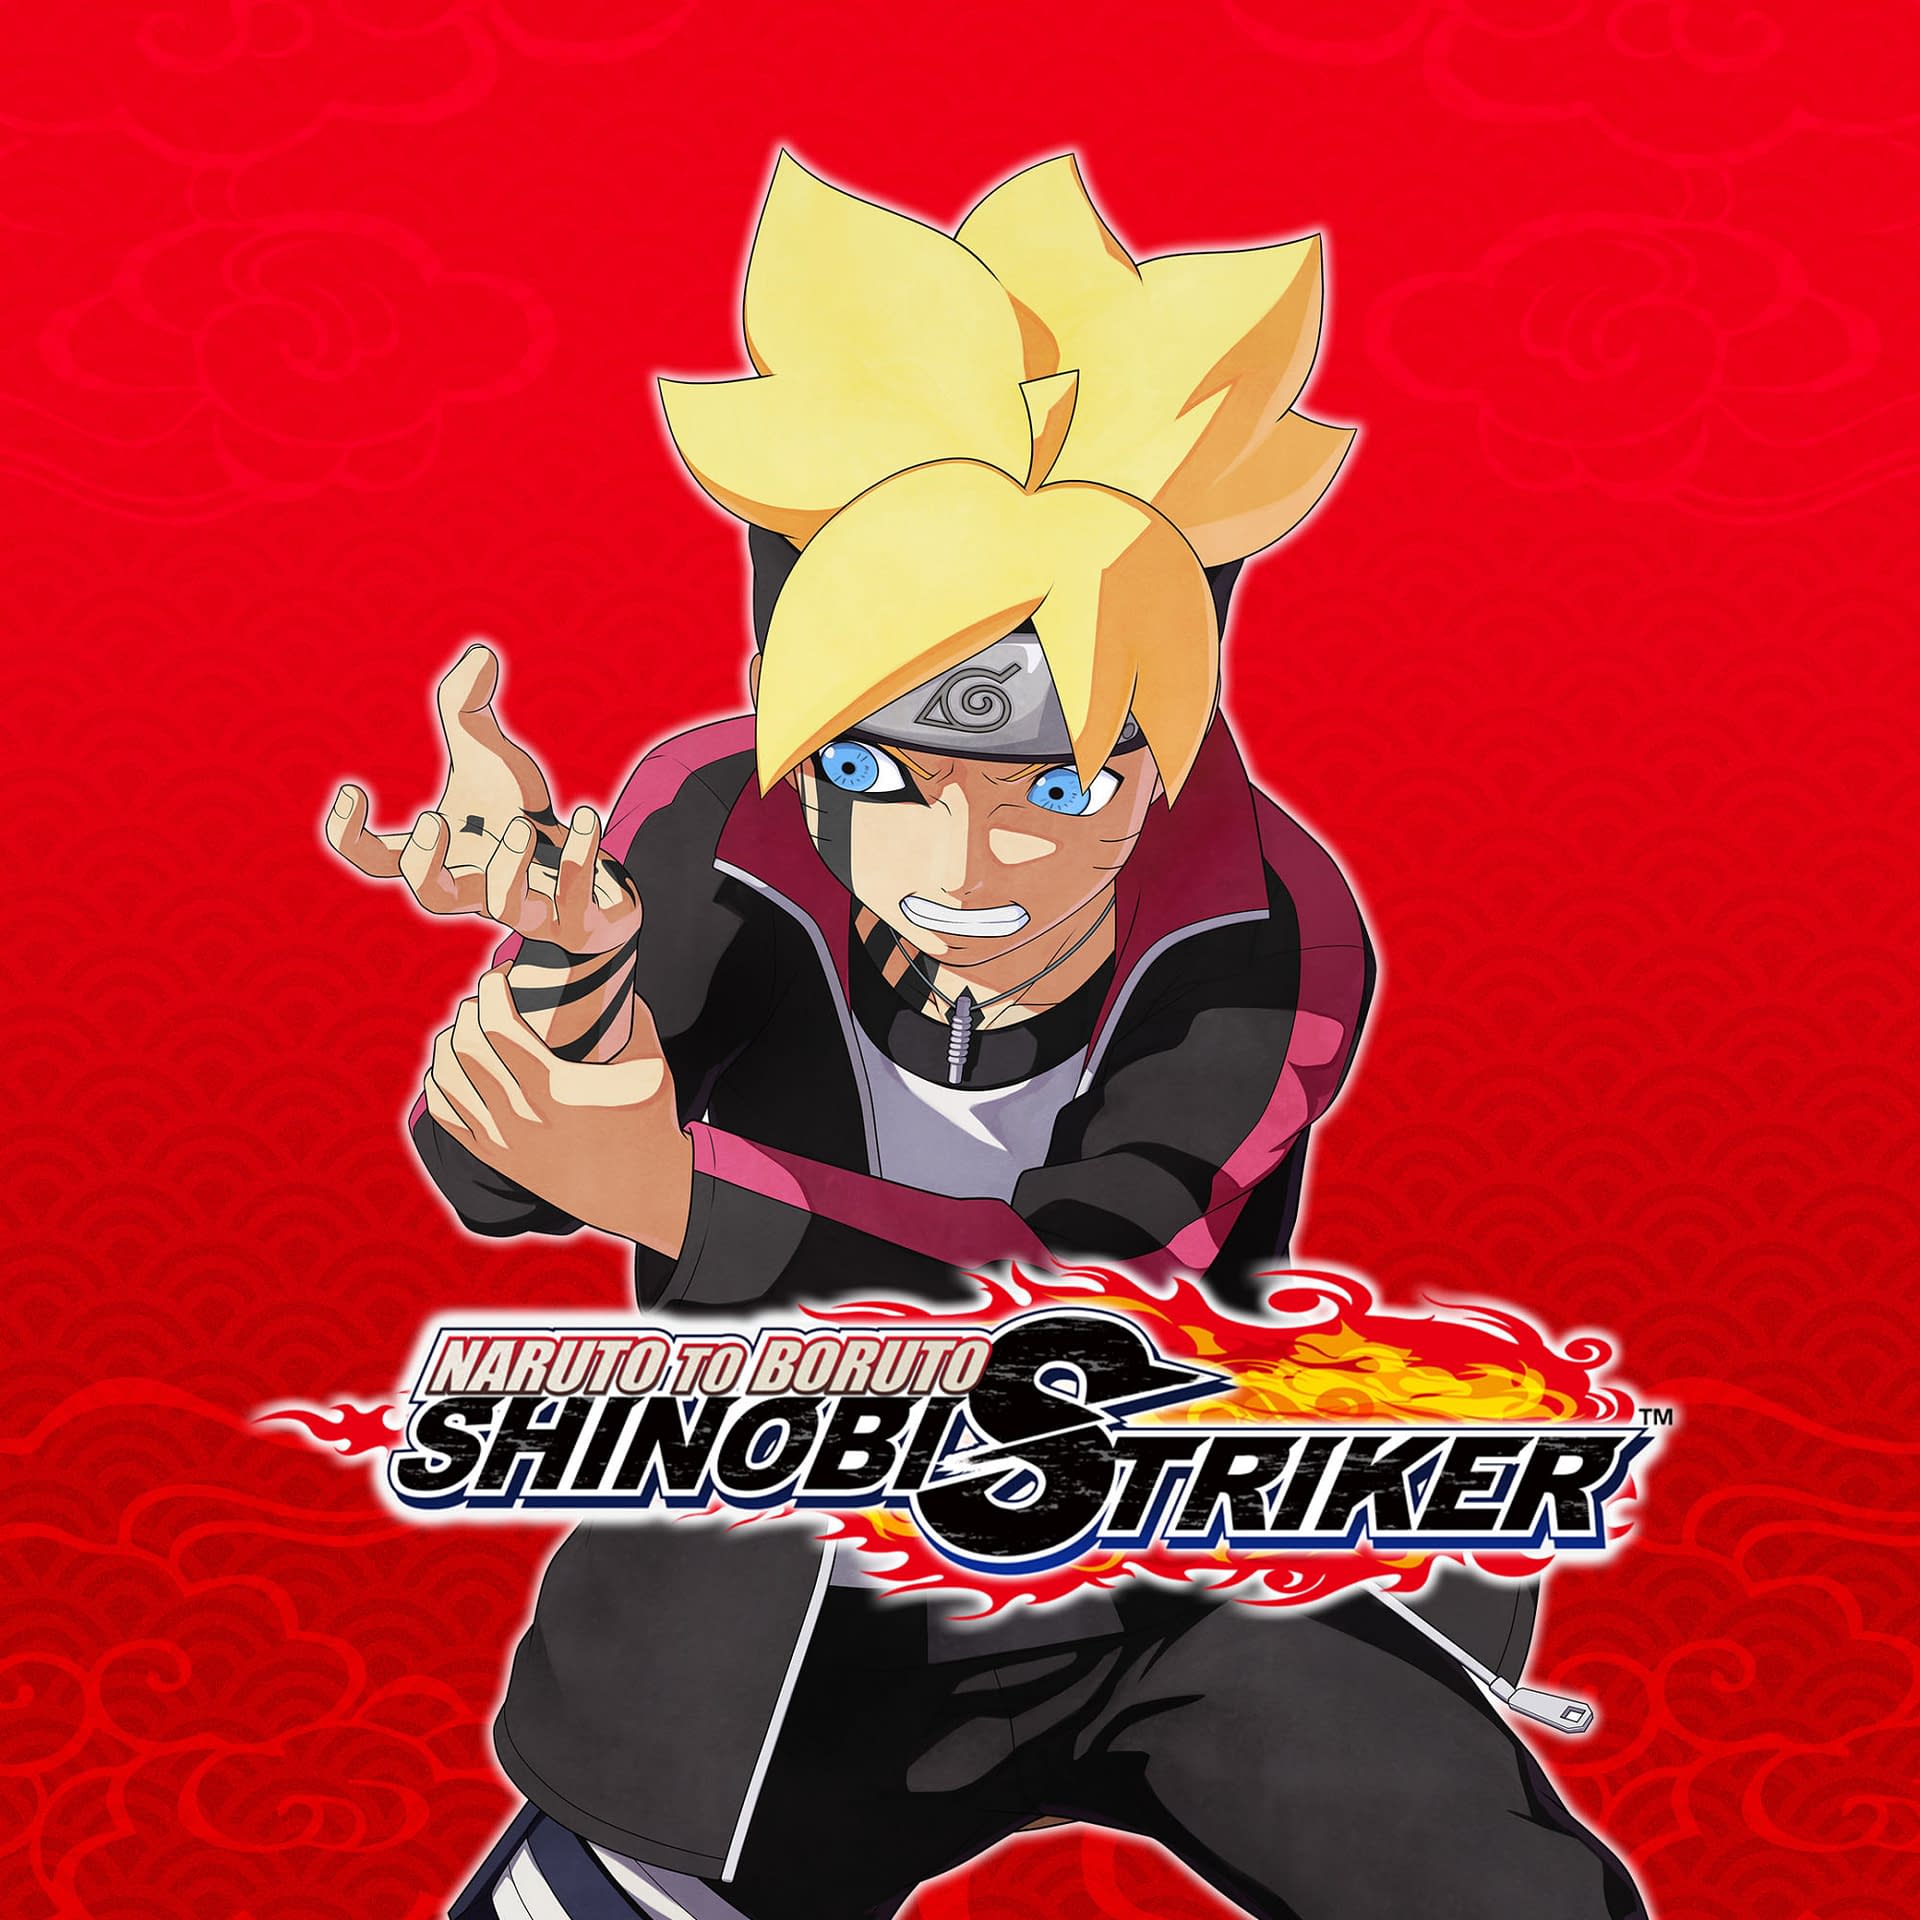 Shinobi Striker DLC: Hãy chuẩn bị sẵn sàng trải nghiệm thêm rất nhiều kỹ năng không chiến mới với các bản mở rộng của Shinobi Striker . Hãy xem hình ảnh để biết thêm chi tiết về các DLC mới nhất.